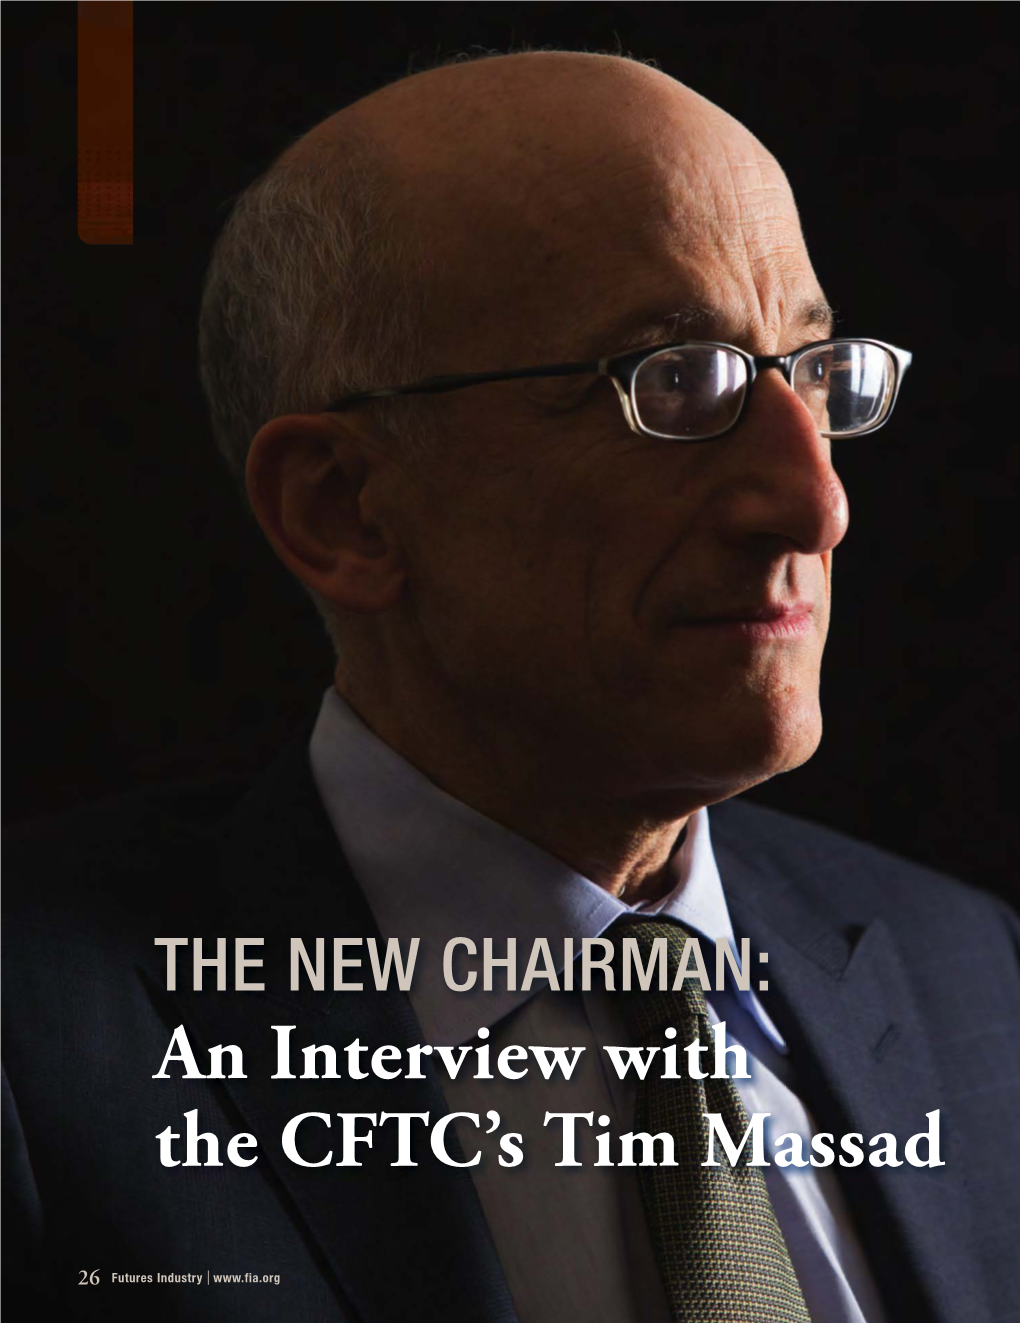 An Interview with the CFTC's Tim Massad